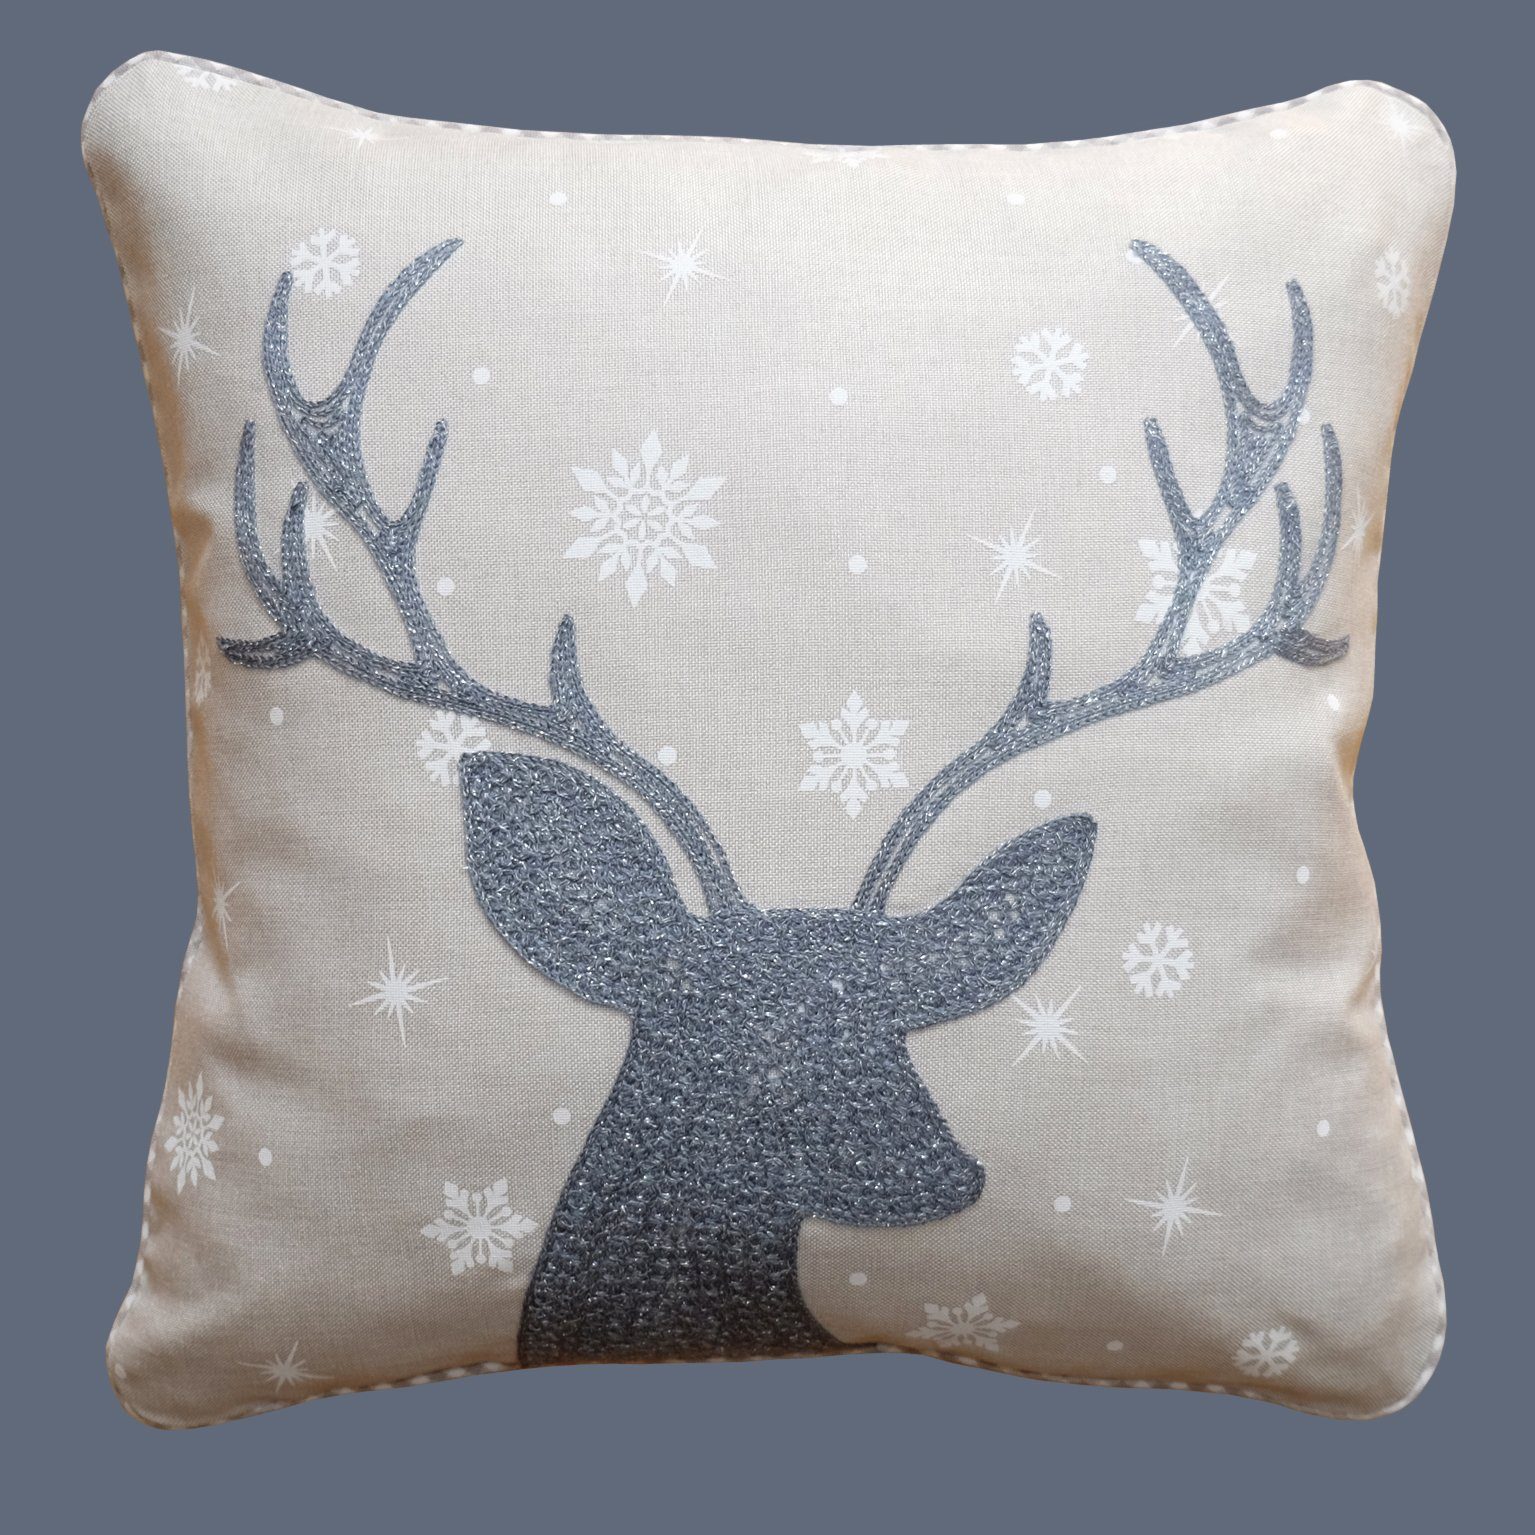 Kissenhülle mit verschiedenen Motiven Advent Weihnachten Winter, TextilDepot24, mit Reißverschluss silber | Kissenbezüge